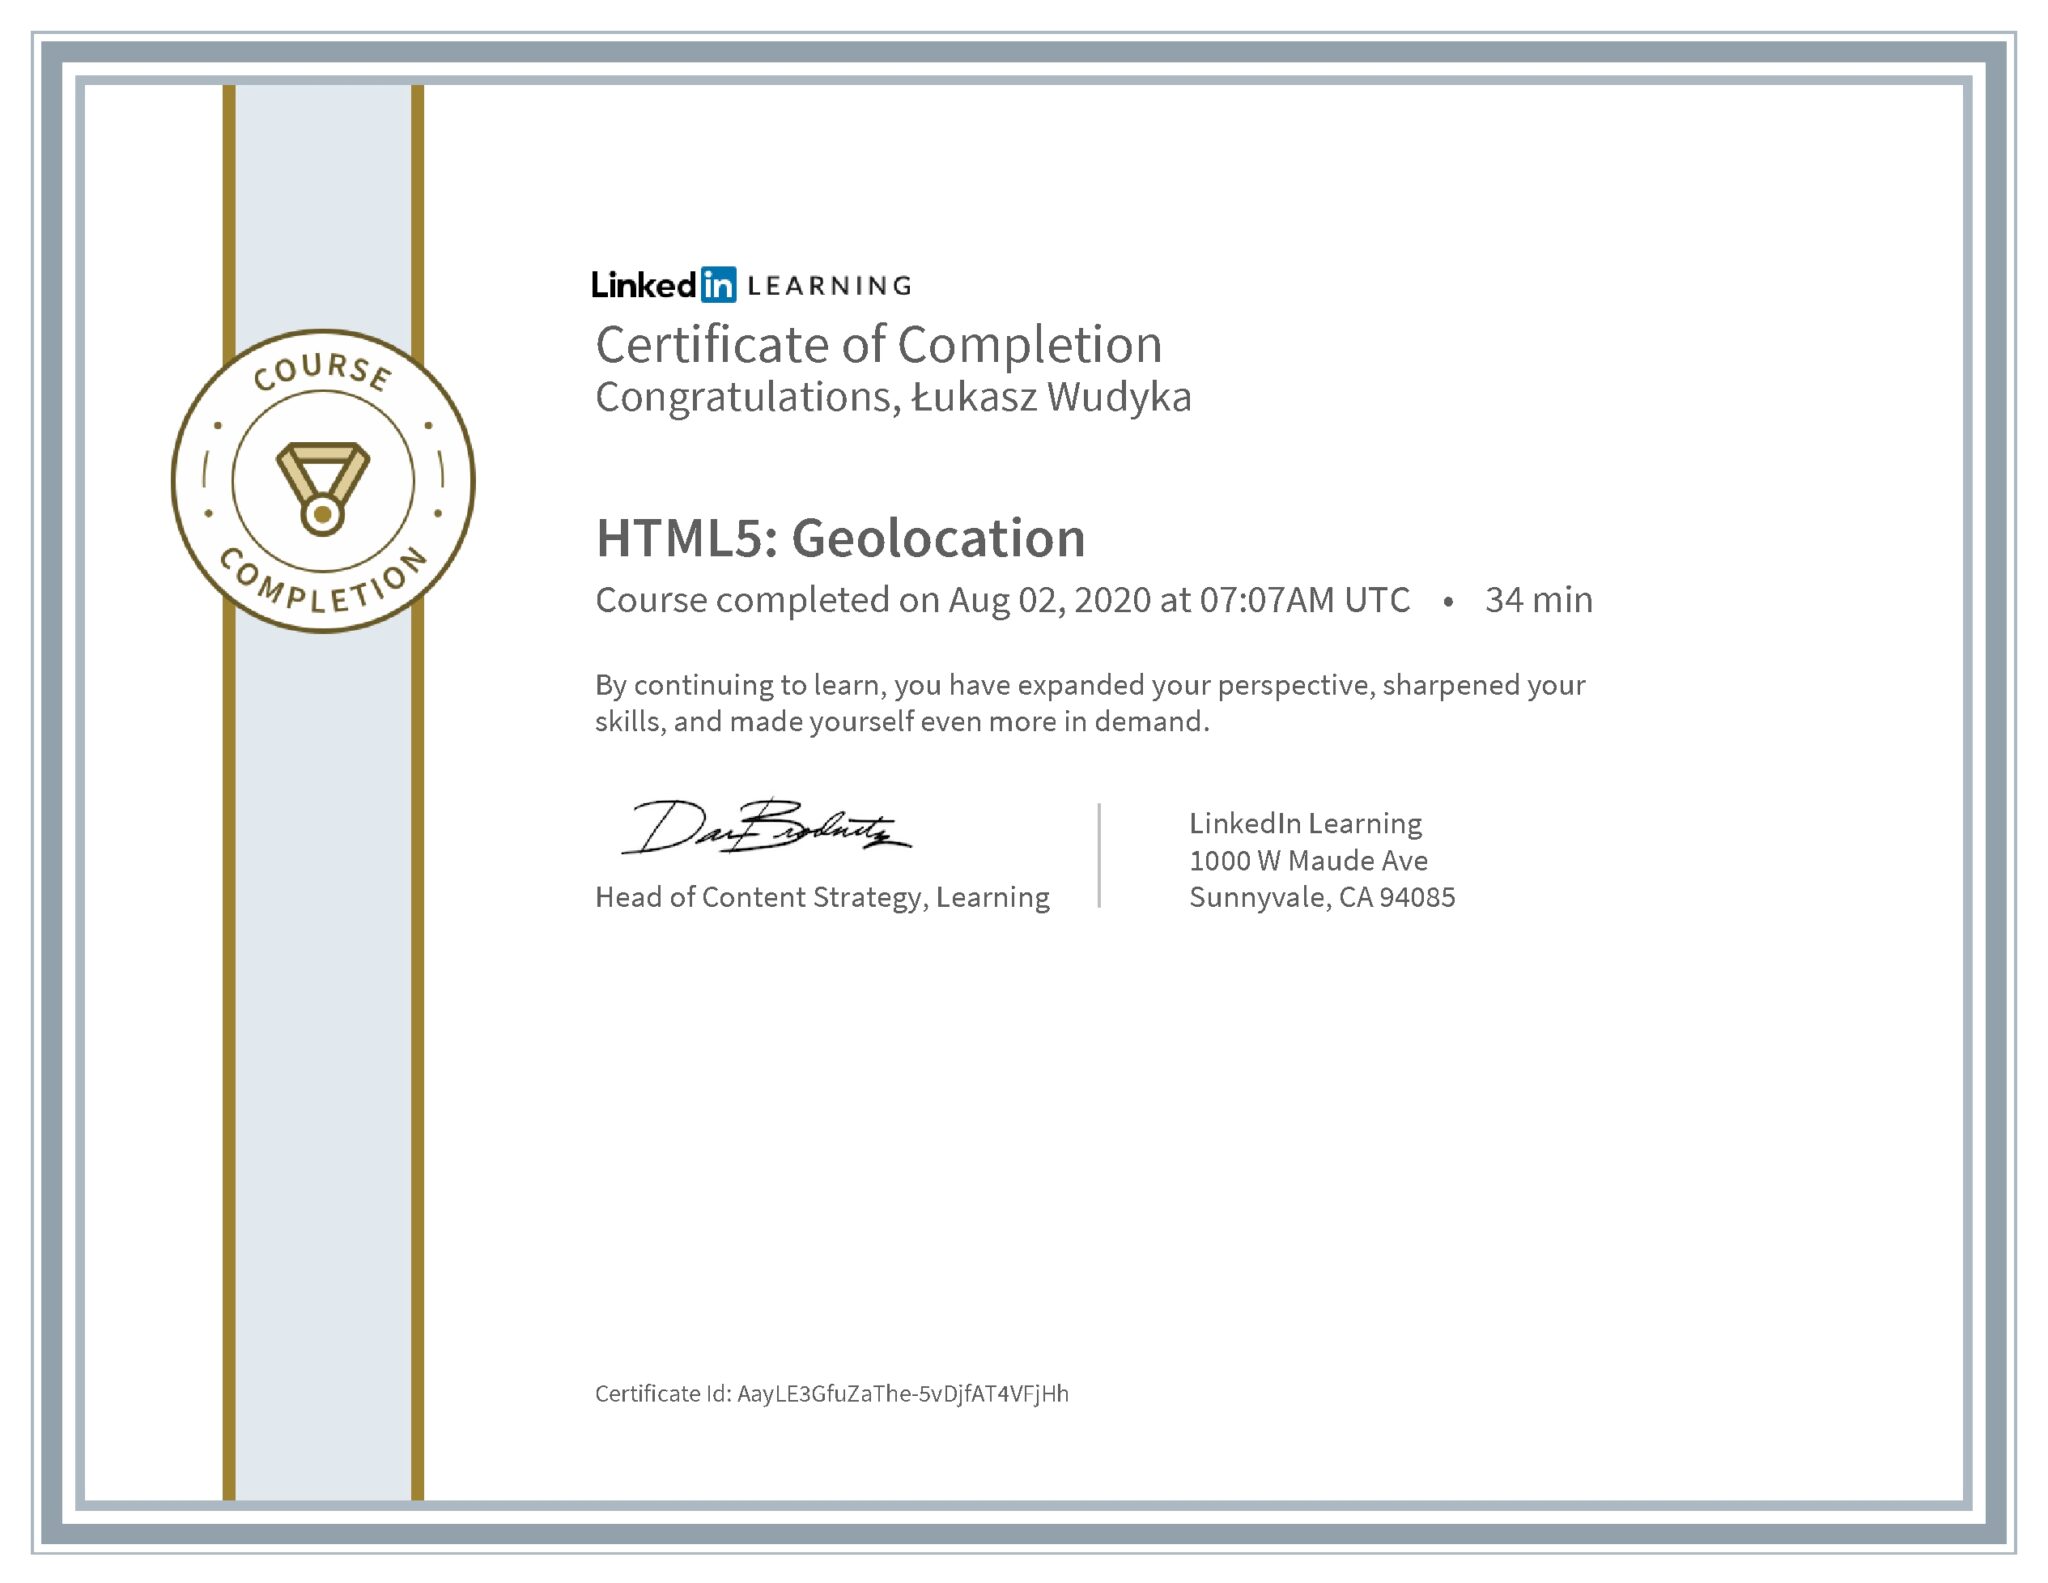 Łukasz Wudyka certyfikat LinkedIn HTML5: Geolocation